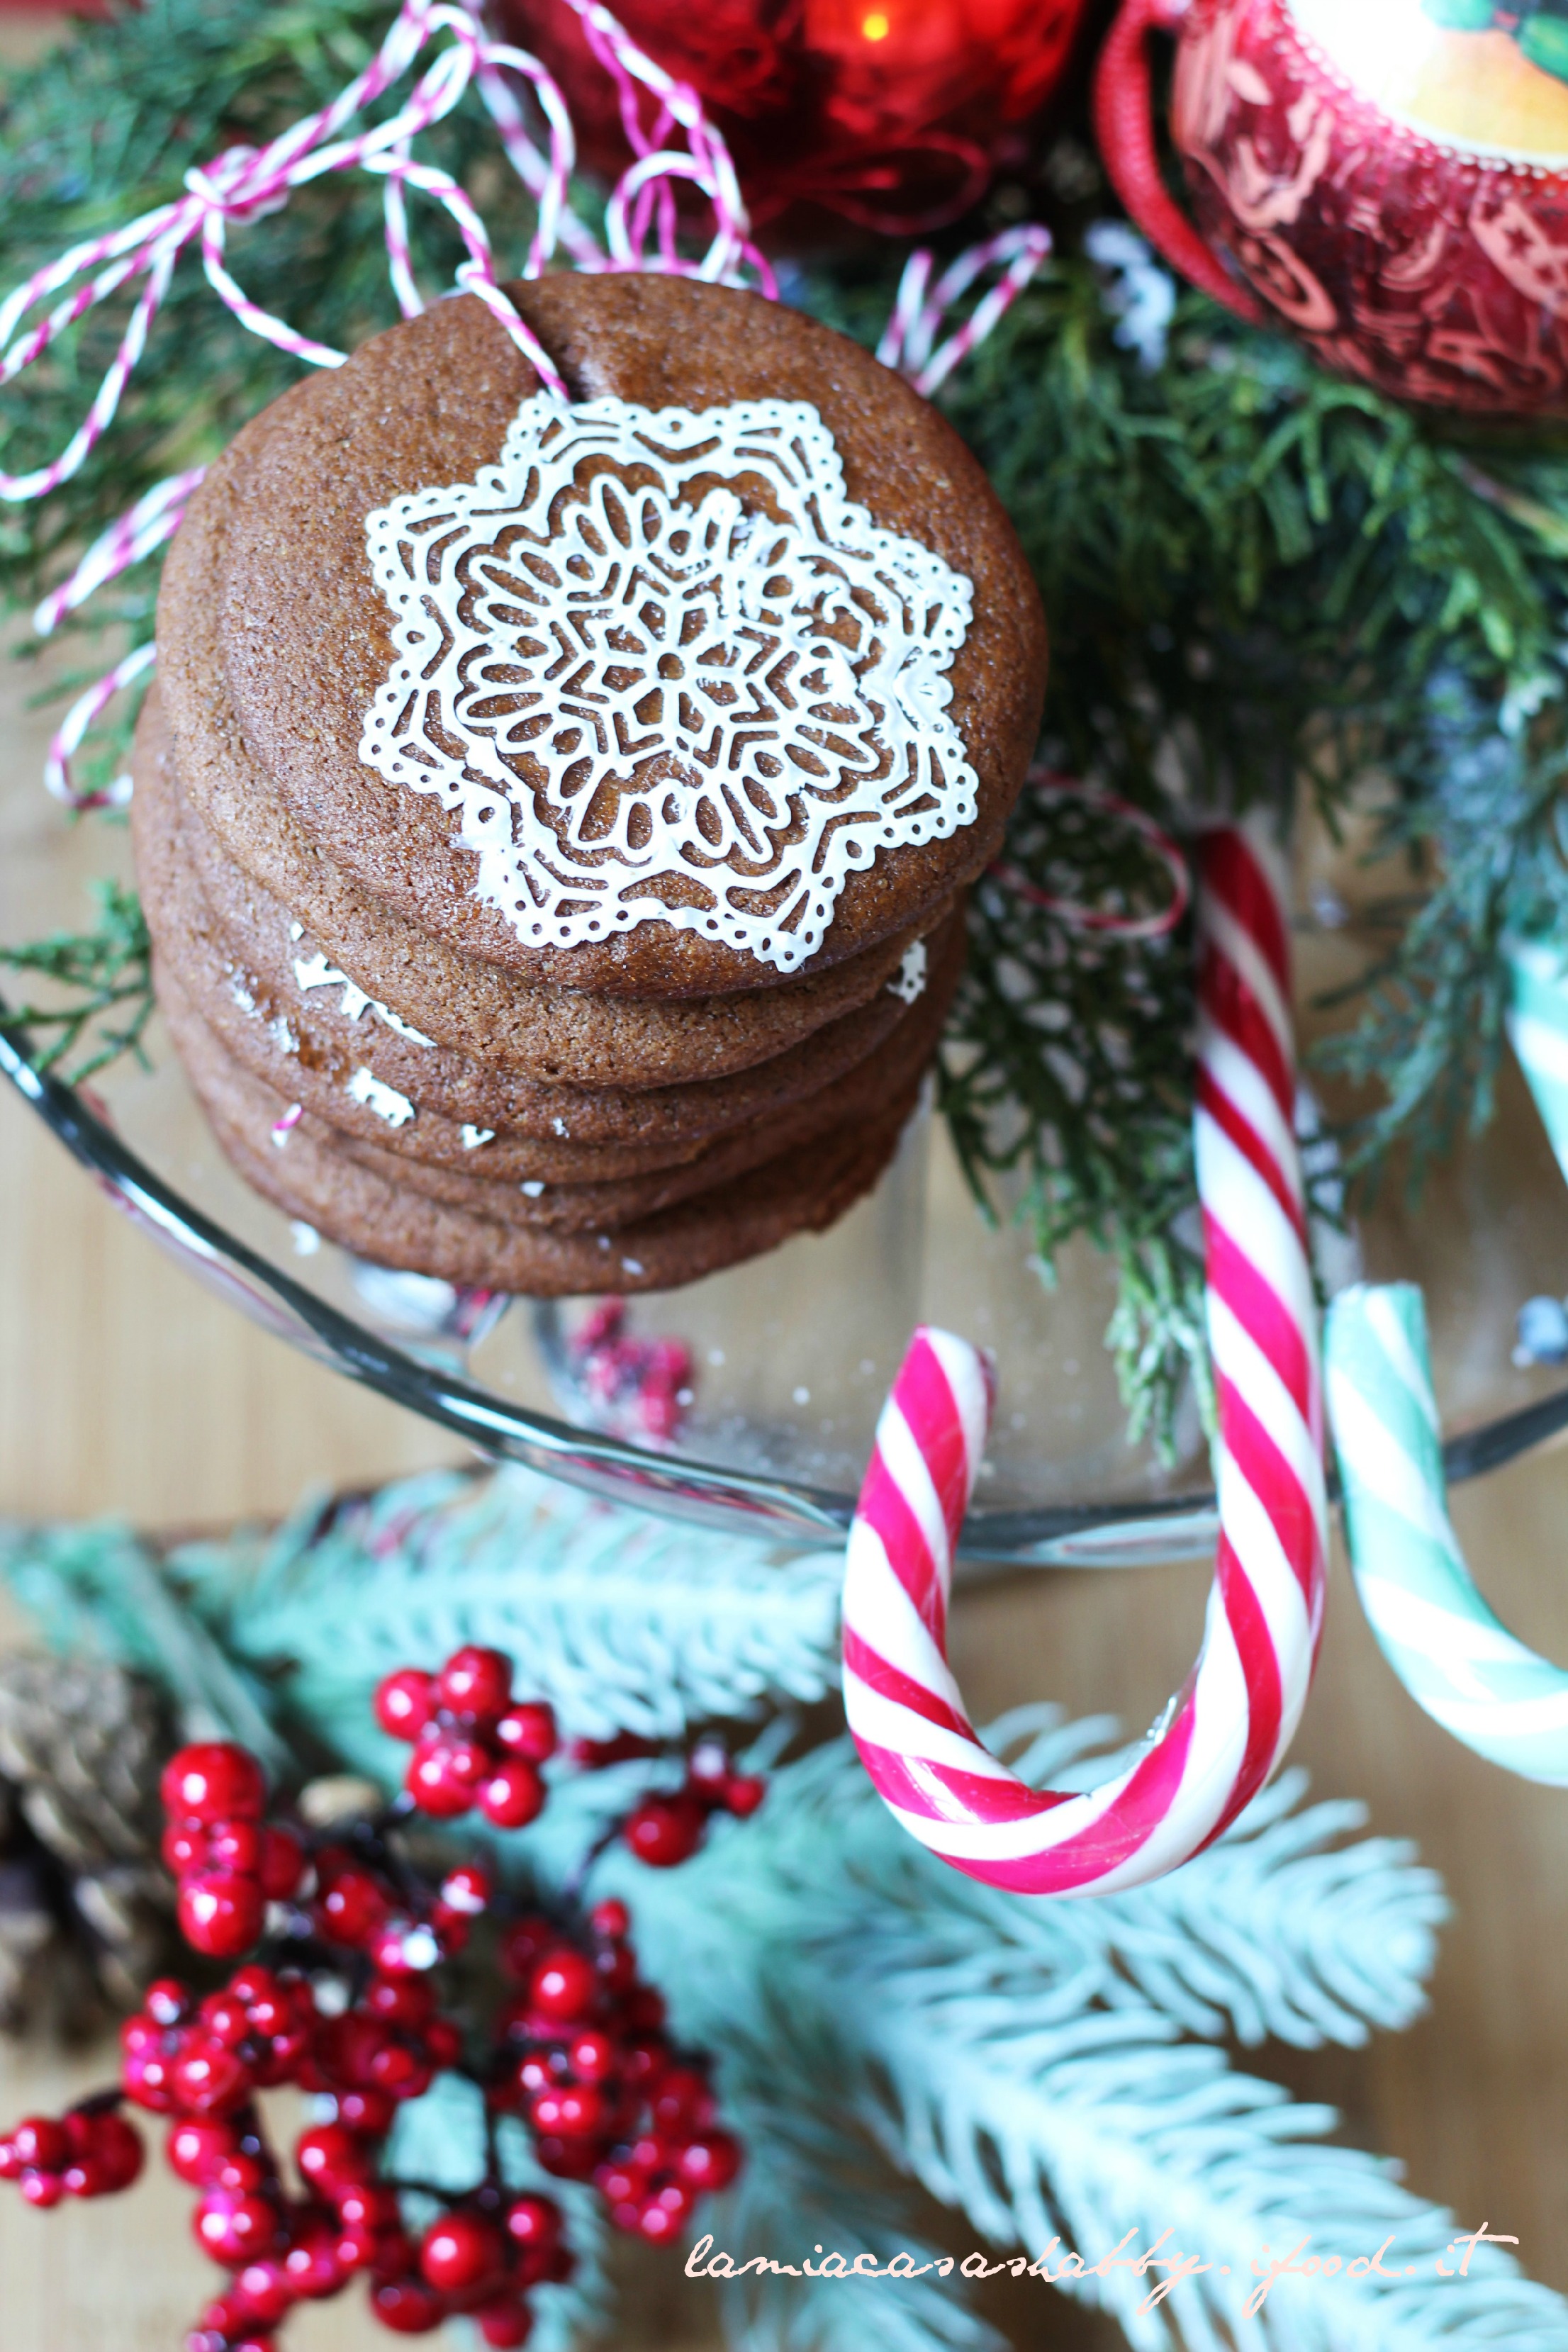 Immagini Natale Html.Christmas Tree Cookies Al Cacao Con Zenzero E Cannella My Shabby Chic Kitchen